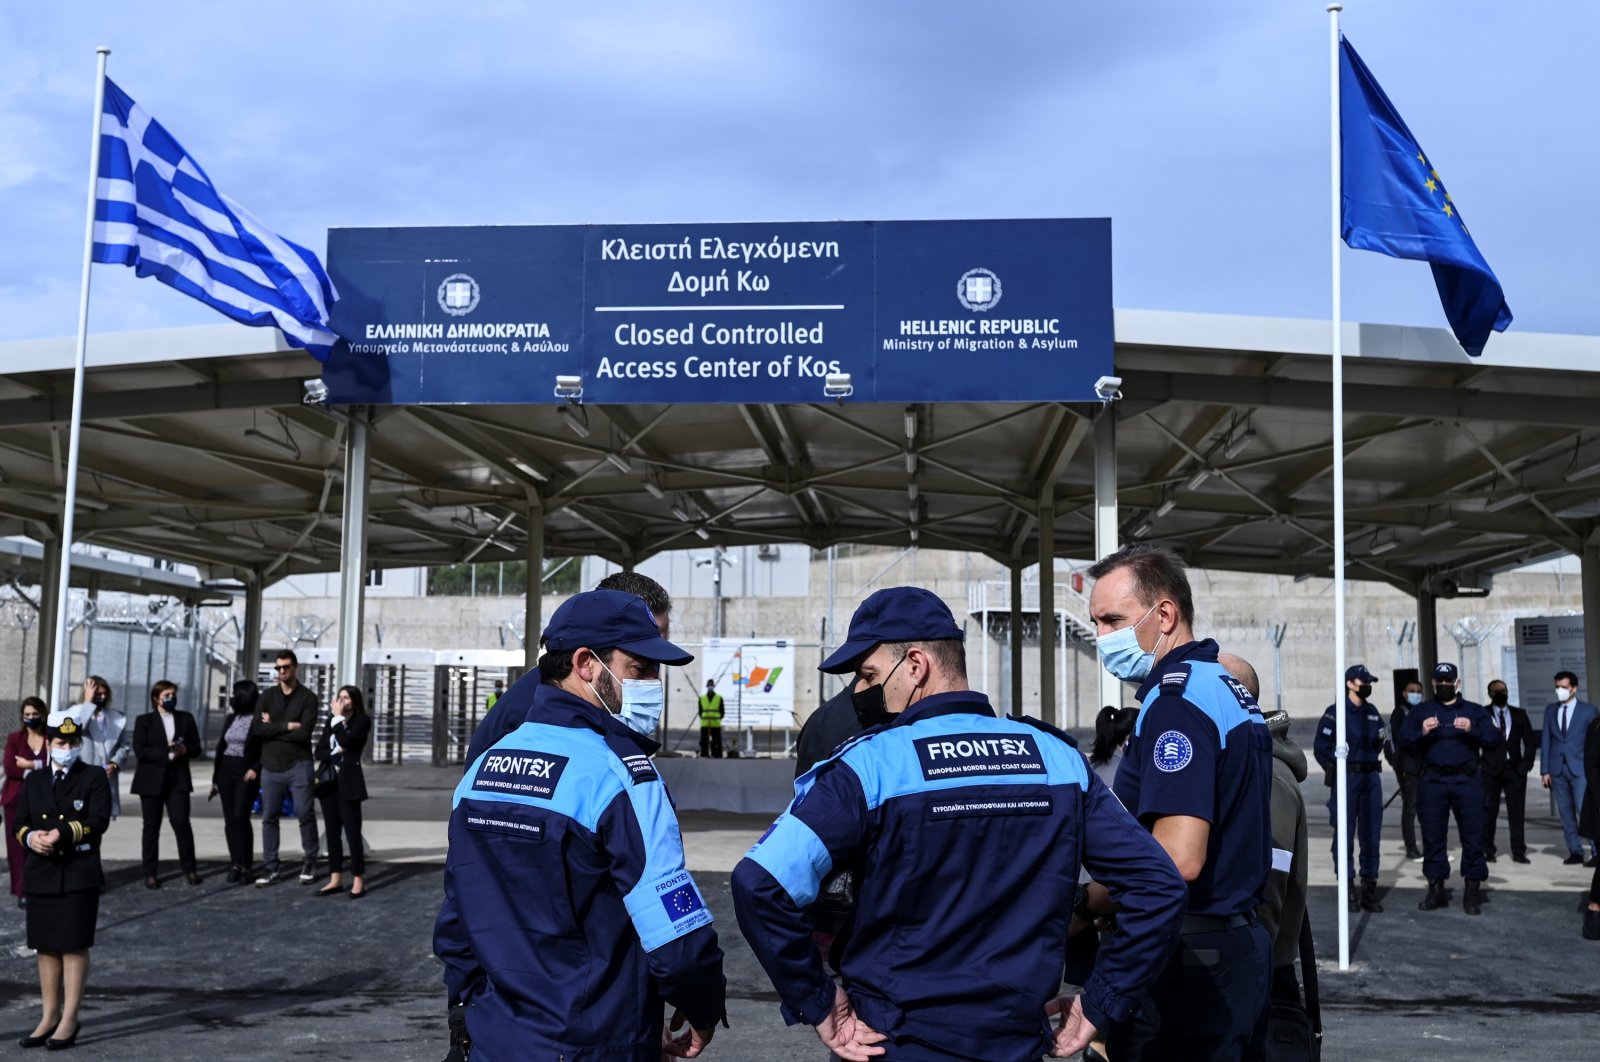 Kisah penerjemah UE mengungkapkan penolakan migran Yunani terhadap Turki